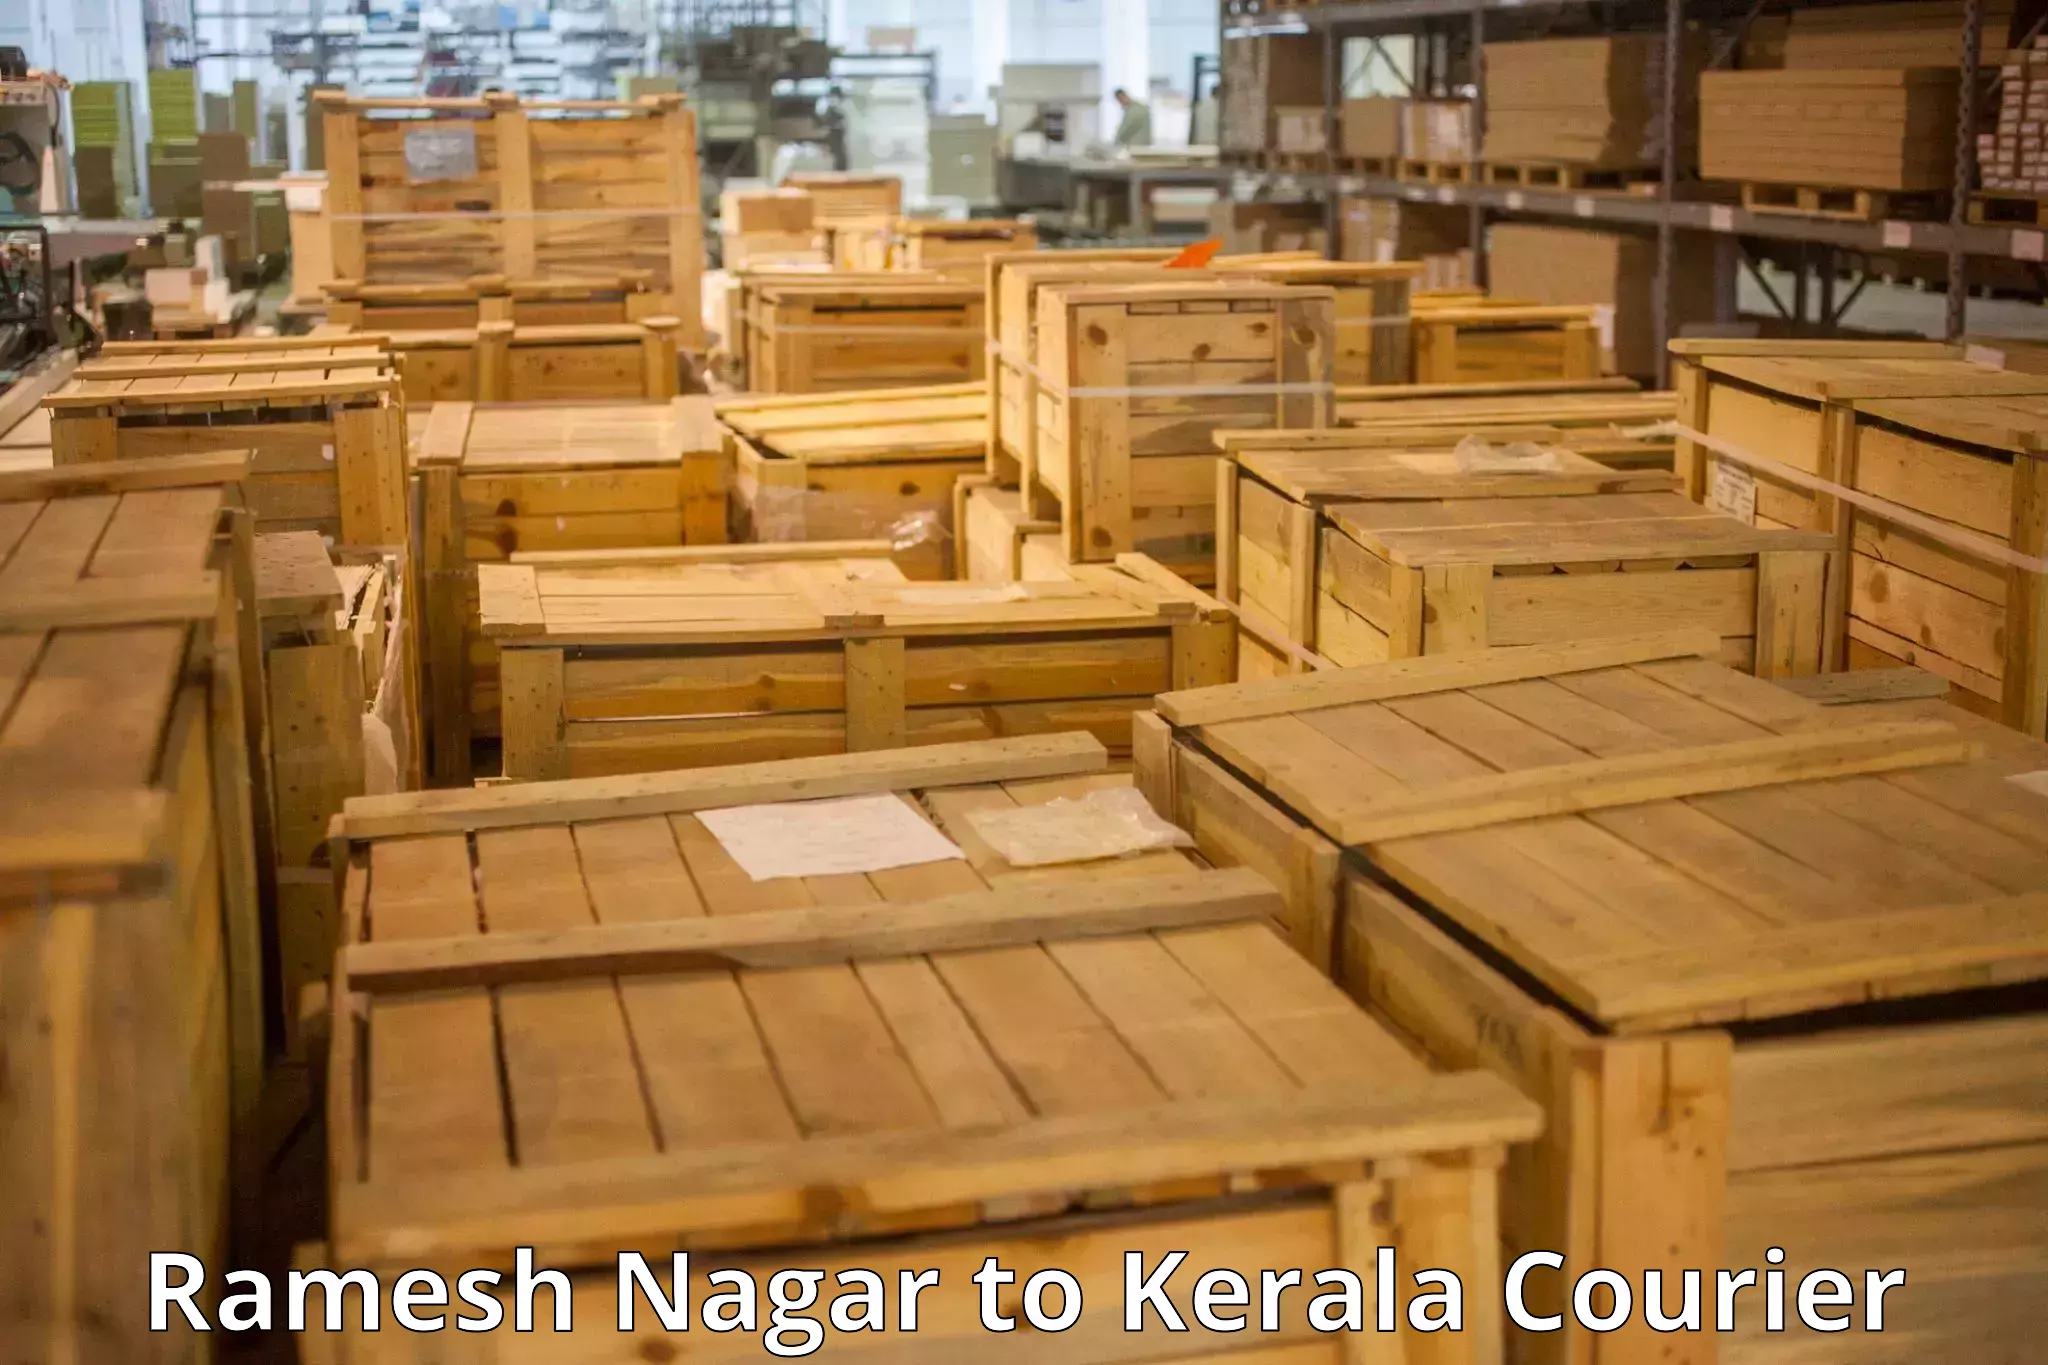 Baggage transport technology Ramesh Nagar to Kerala